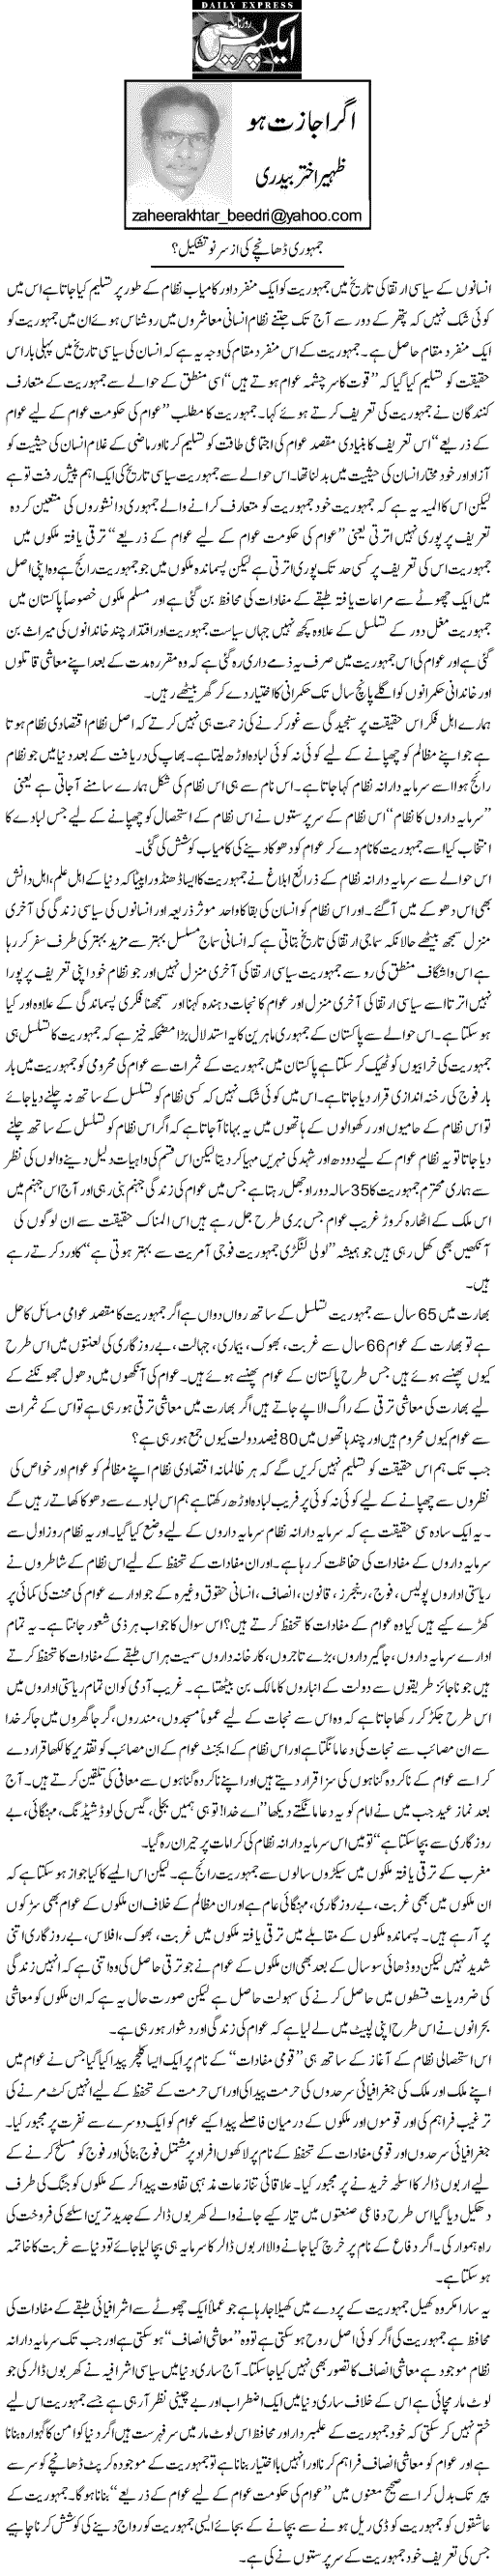 تحریک منہاج القرآن Minhaj-ul-Quran  Print Media Coverage پرنٹ میڈیا کوریج Daily Express - Zaheer Akhtar Bedri